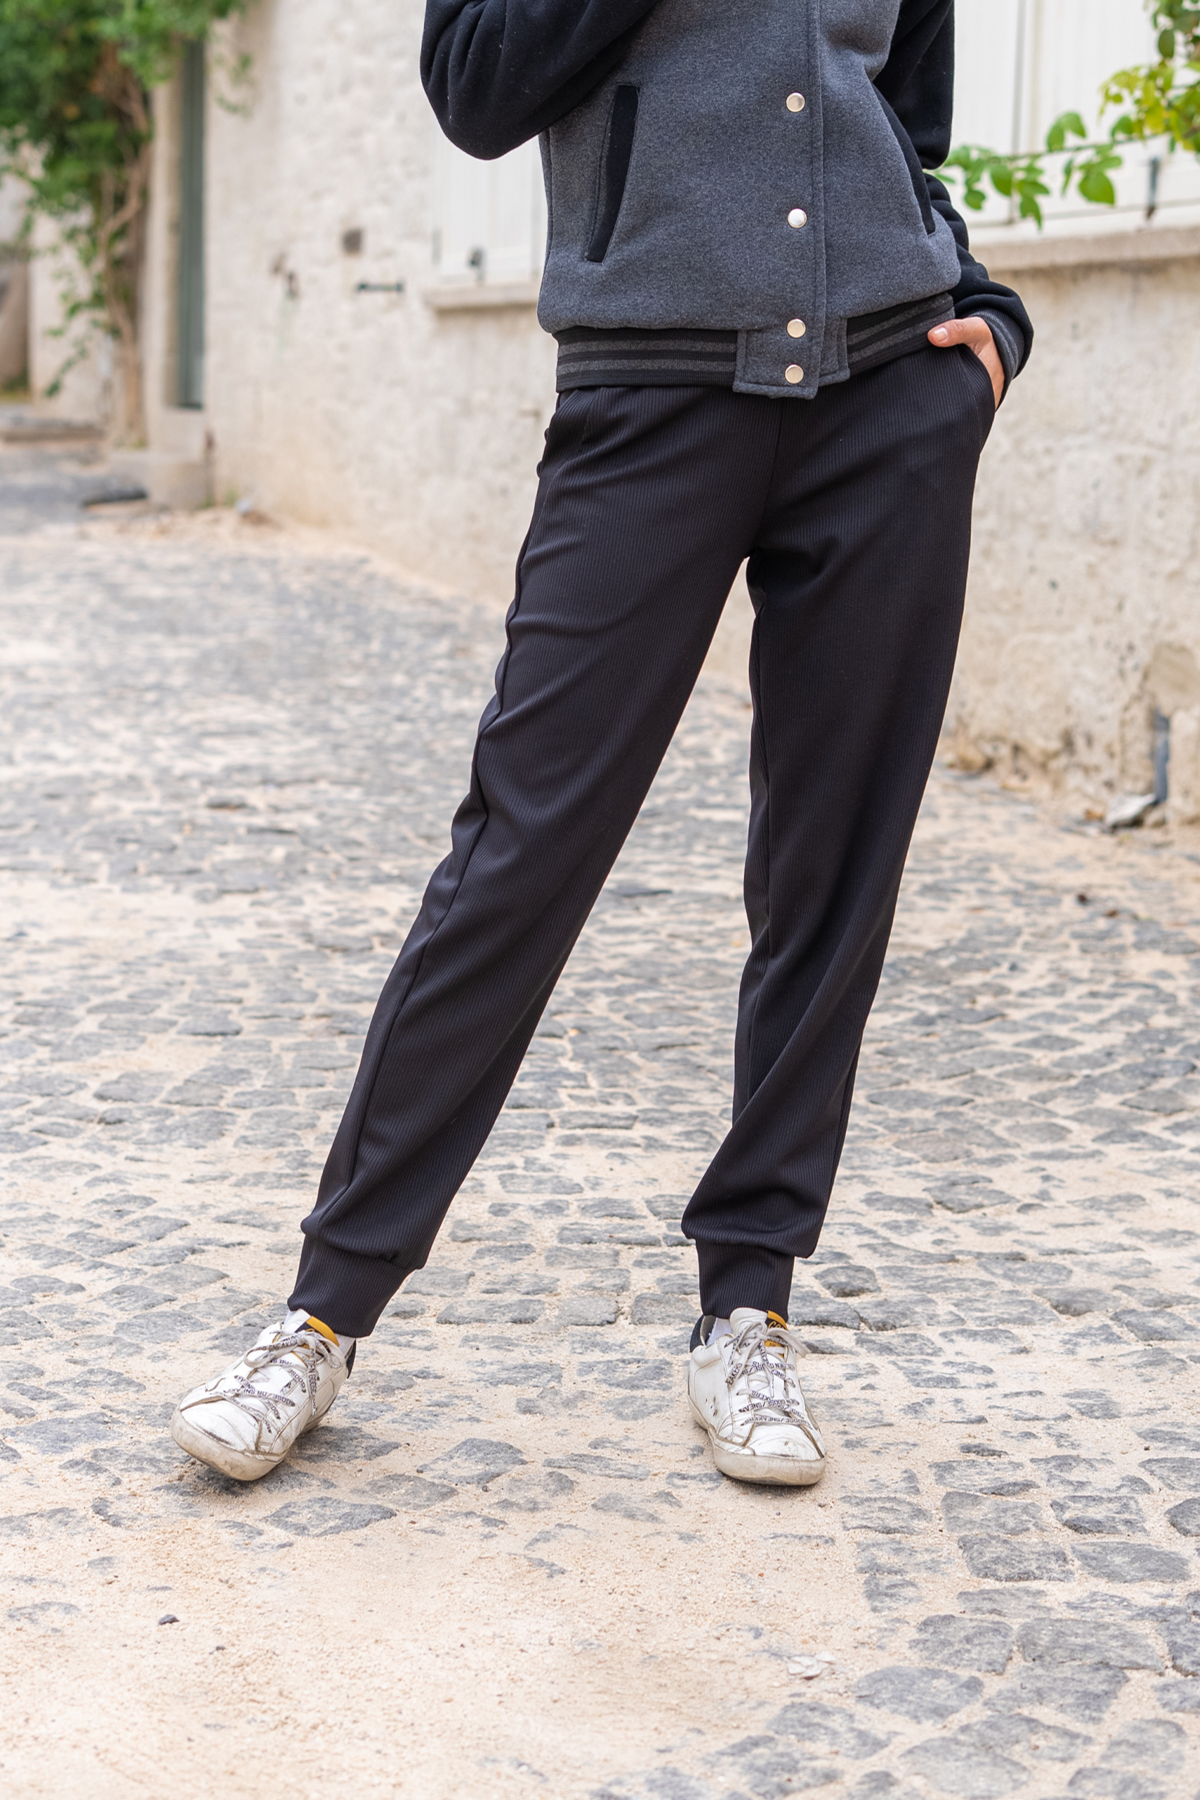 Women's Black Self-Textured Pocket Waist Elastic Jogger Pants Bst3325